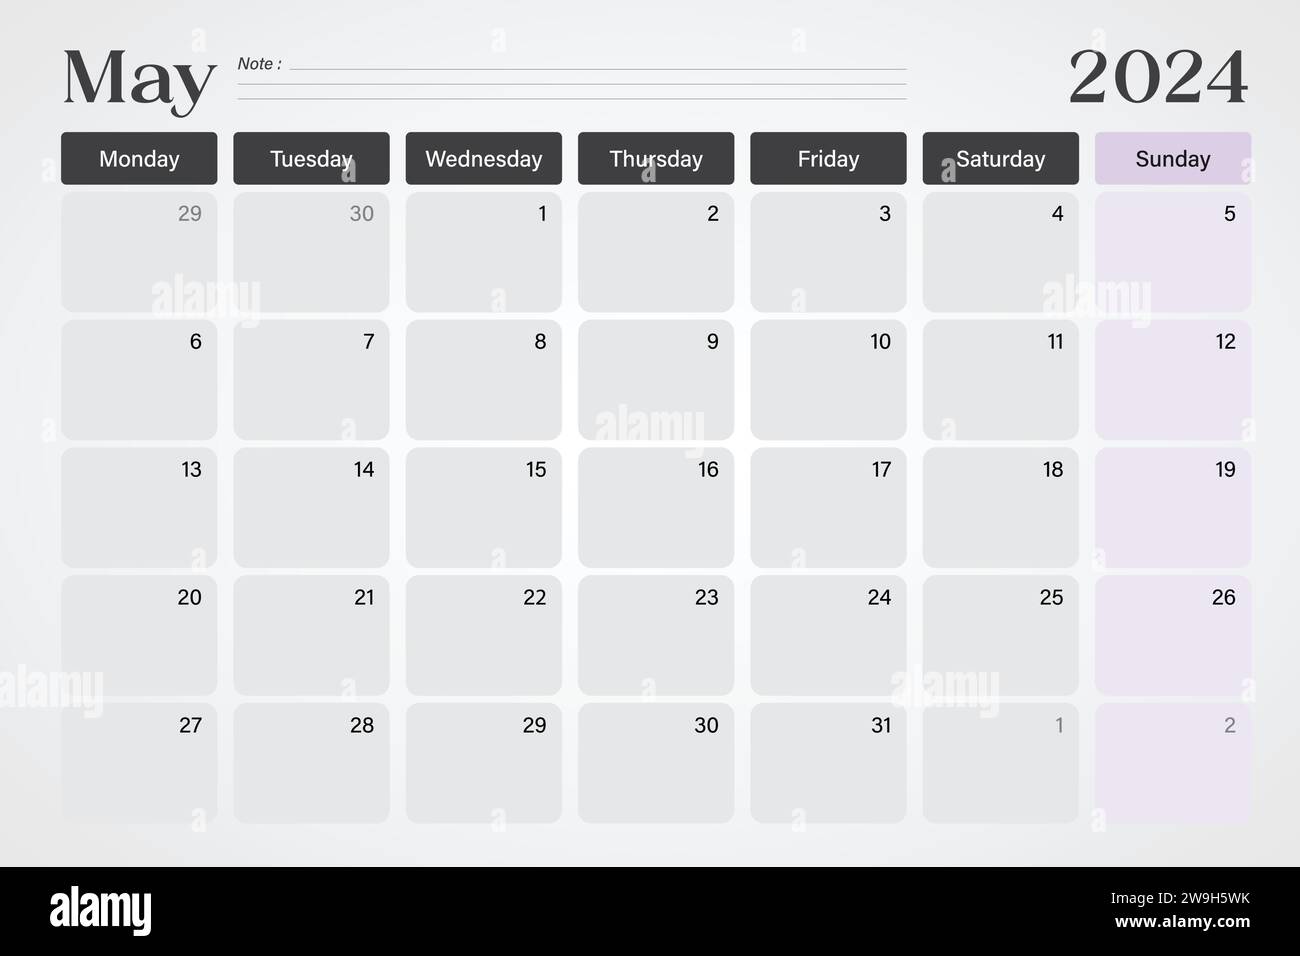 Mai 2024 Kalender- oder Schreibtischplaner in sanften Grau- und Lila-Farben mit leeren Notizzeilen, Wochen beginnen am Montag, Vektor-Illustration Design Stock Vektor